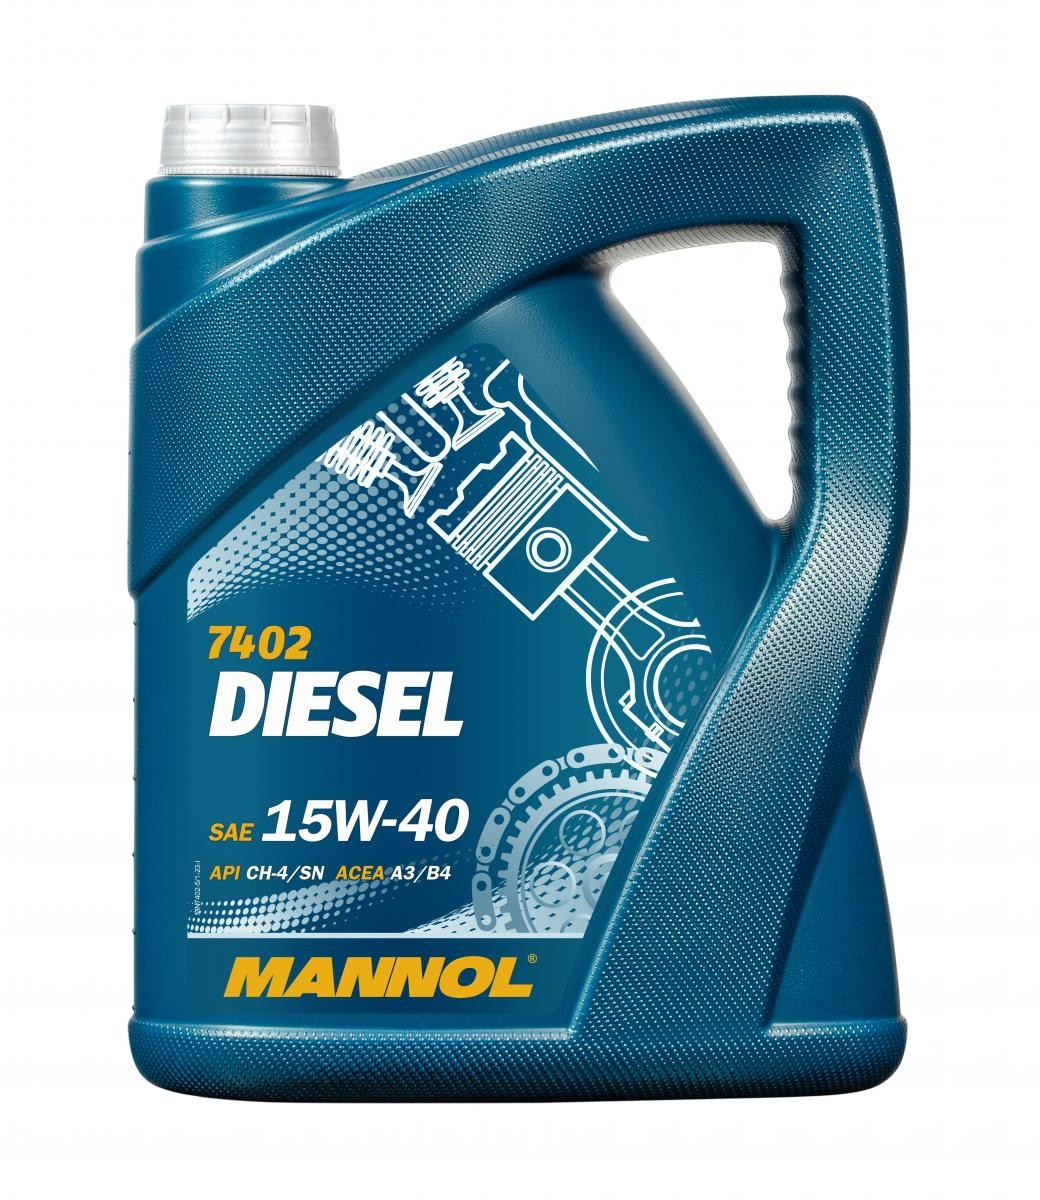 Car oil 15W-40 longlife diesel - MN7402-5 MANNOL DIESEL